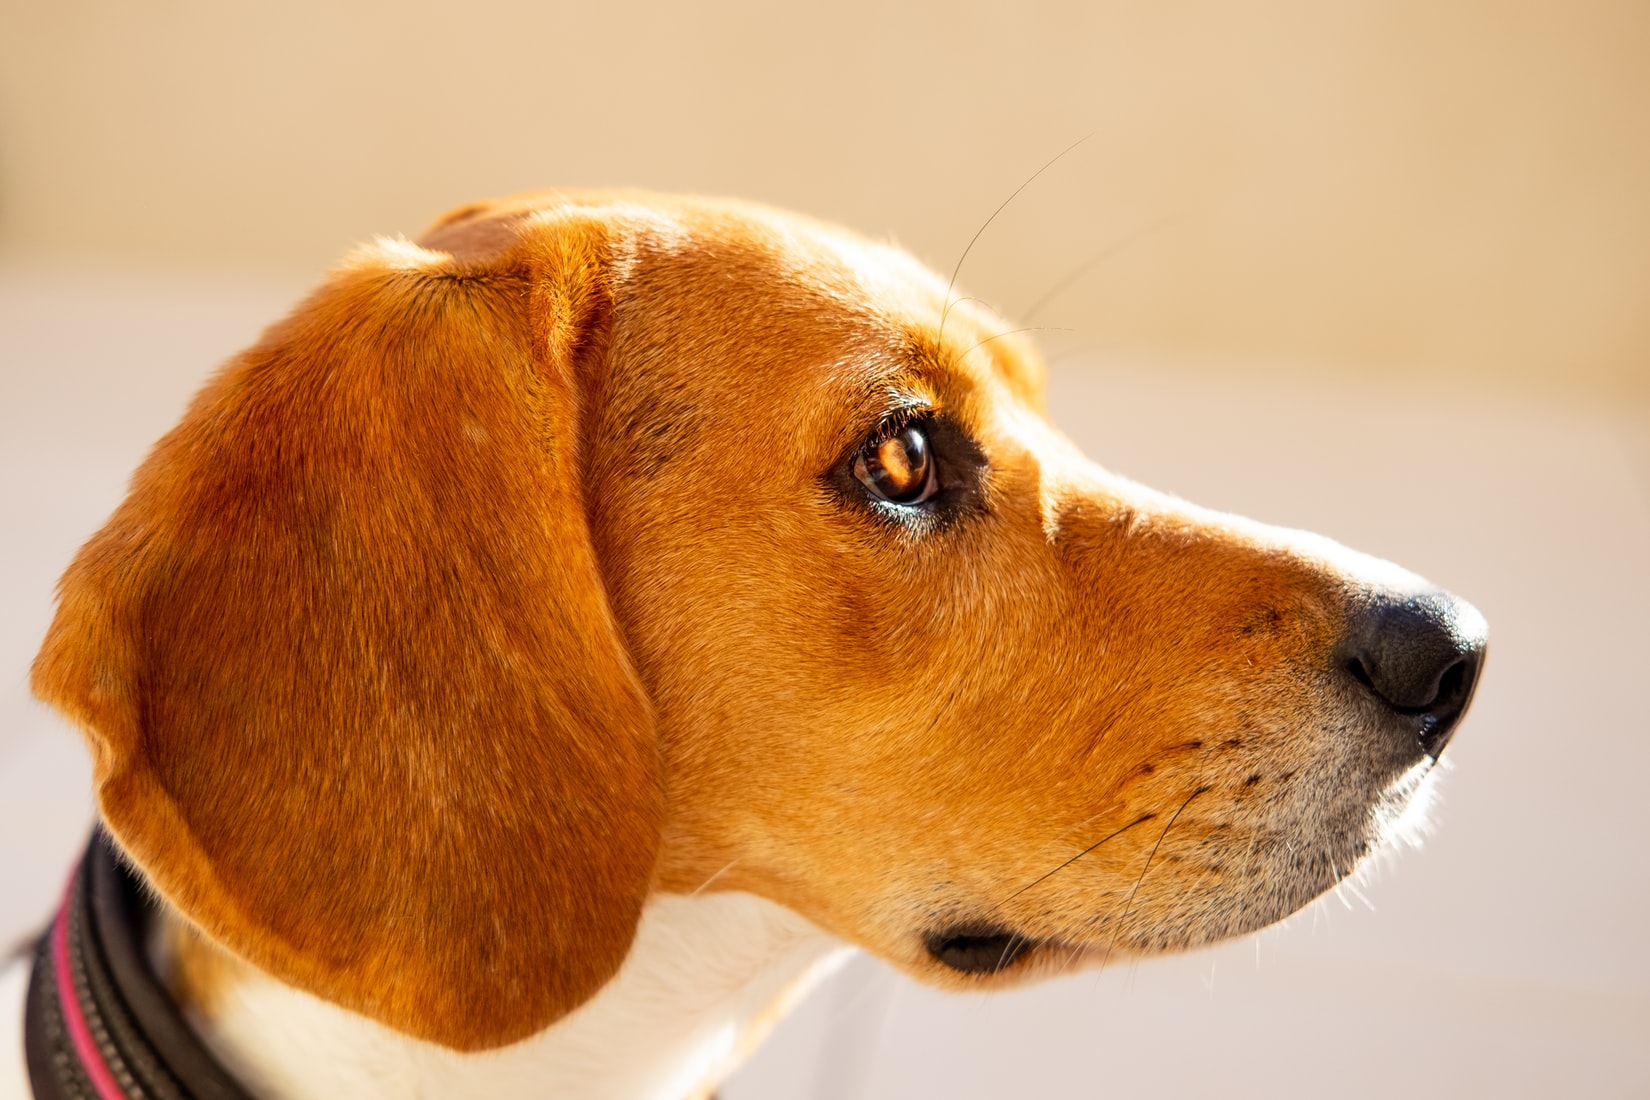 A Beagle looking sideways